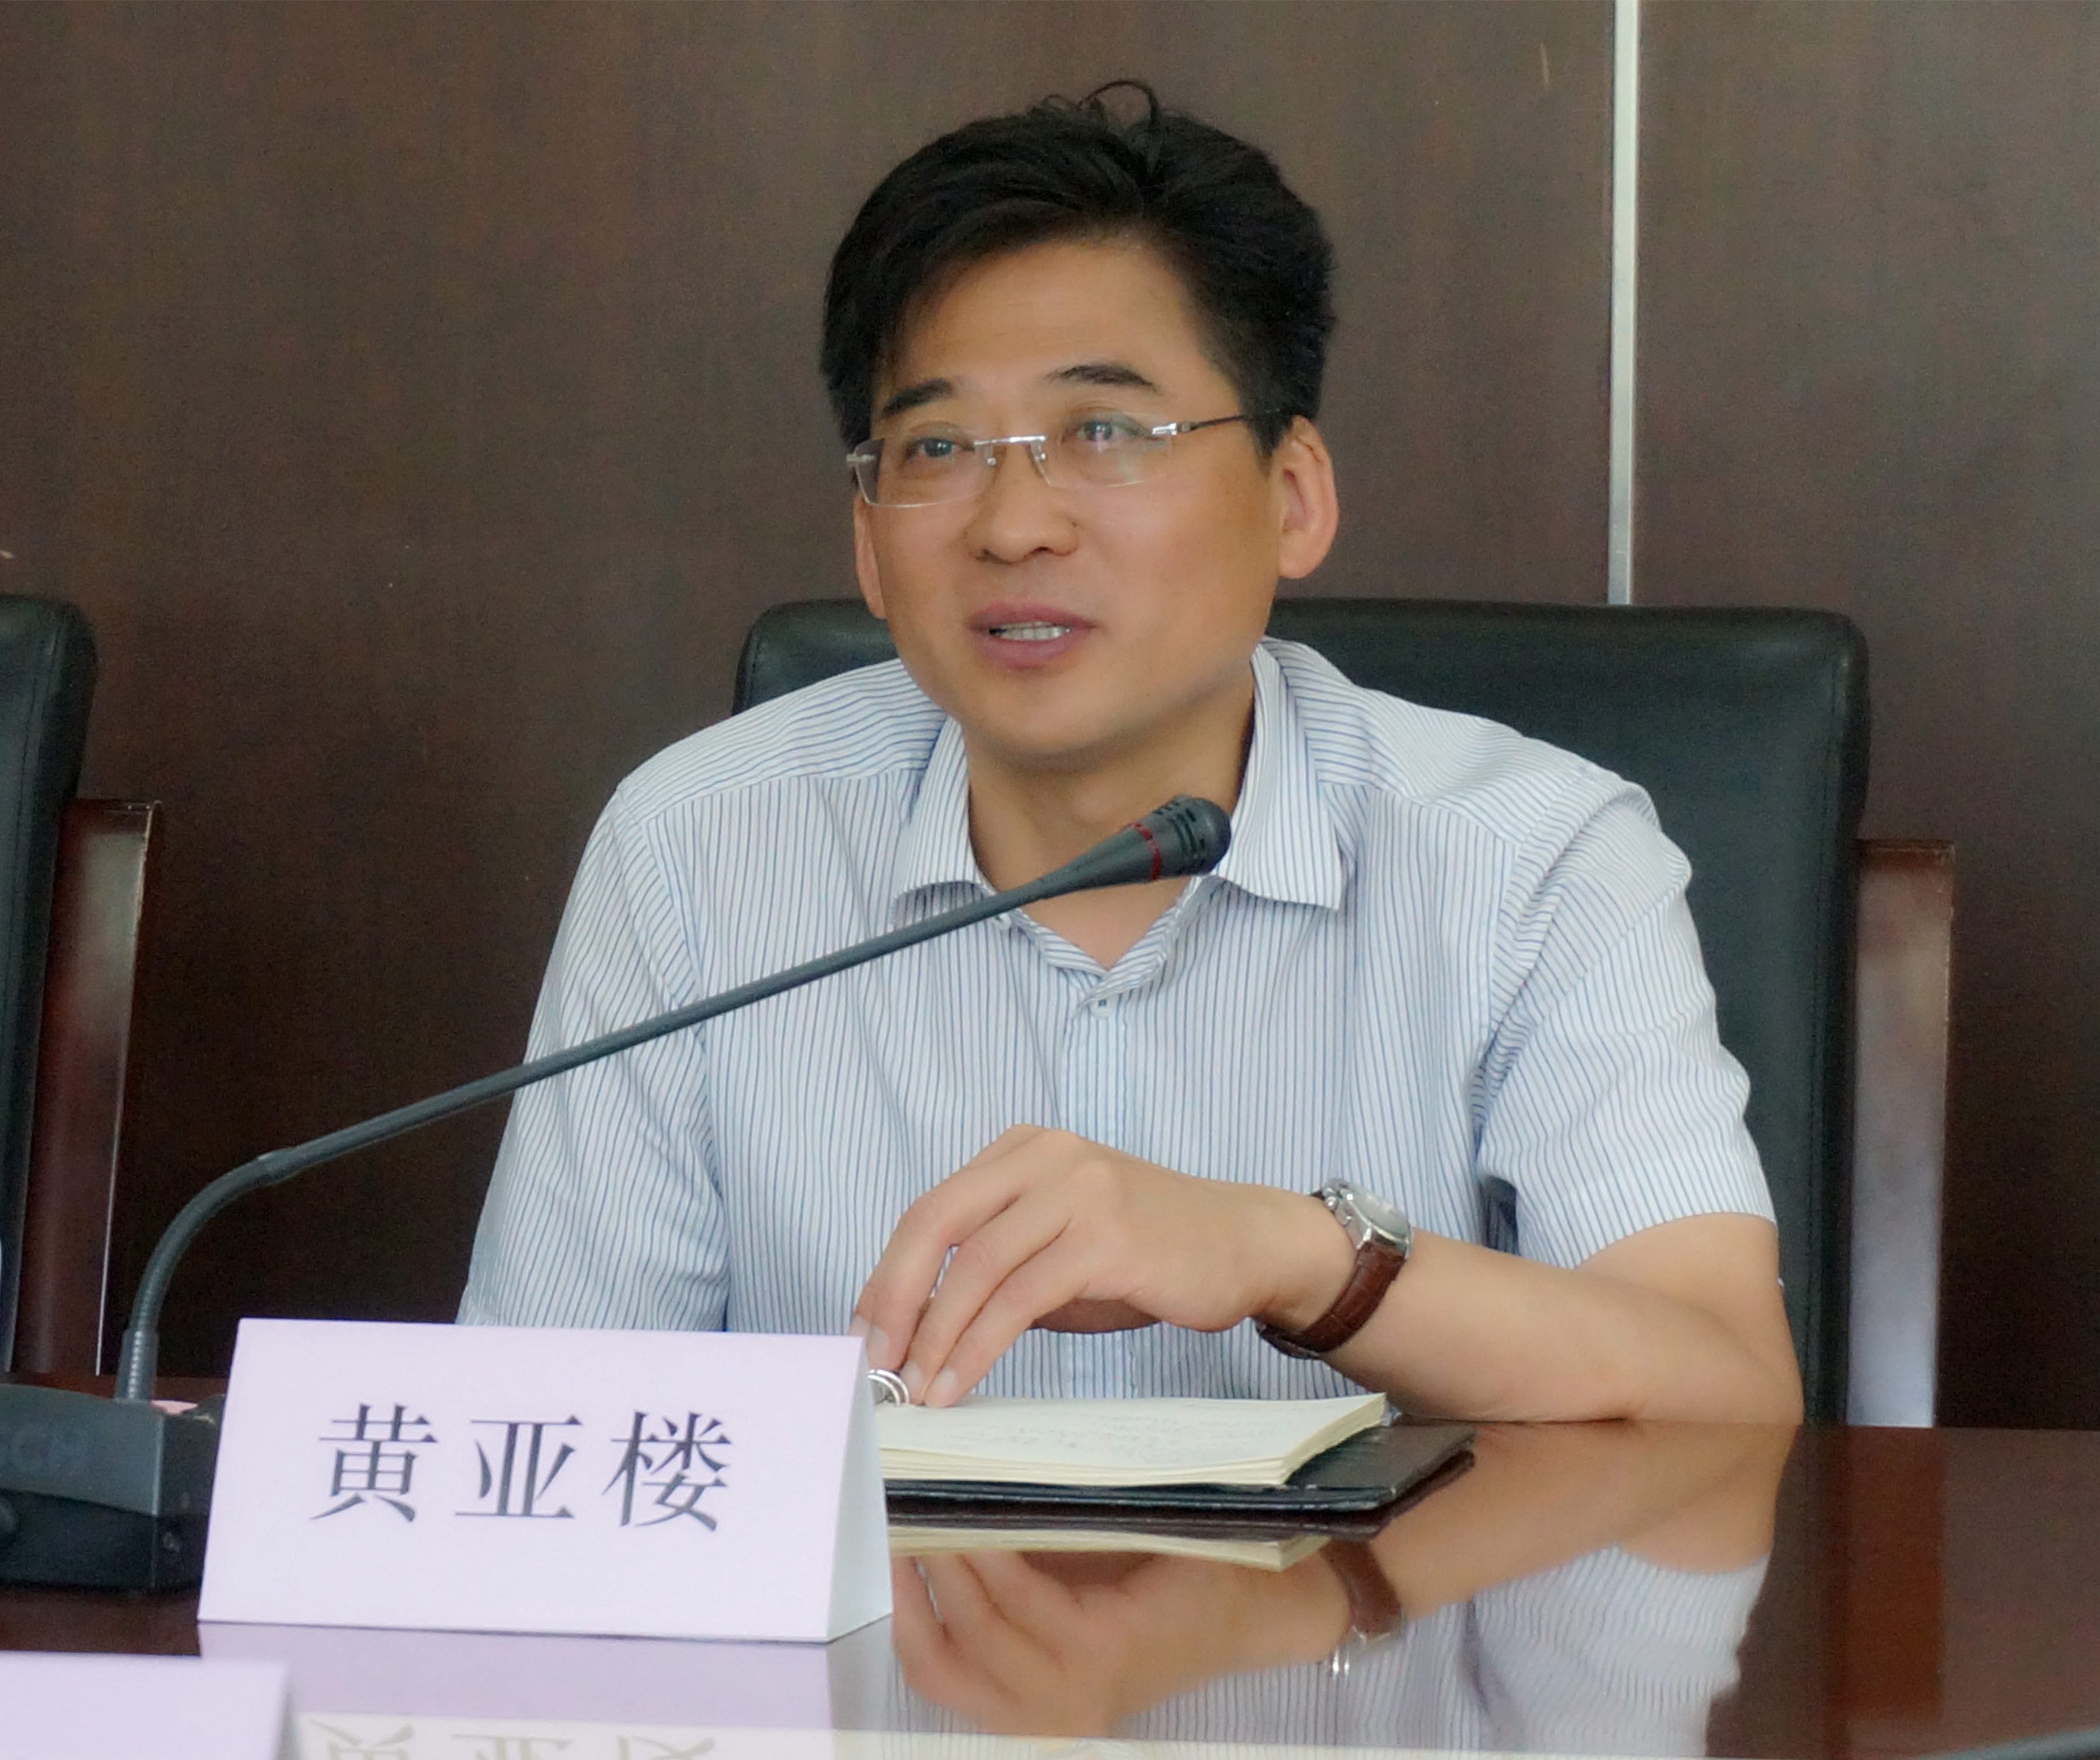 天津市滨海新区科委主任来访我校洽谈科技合作事宜